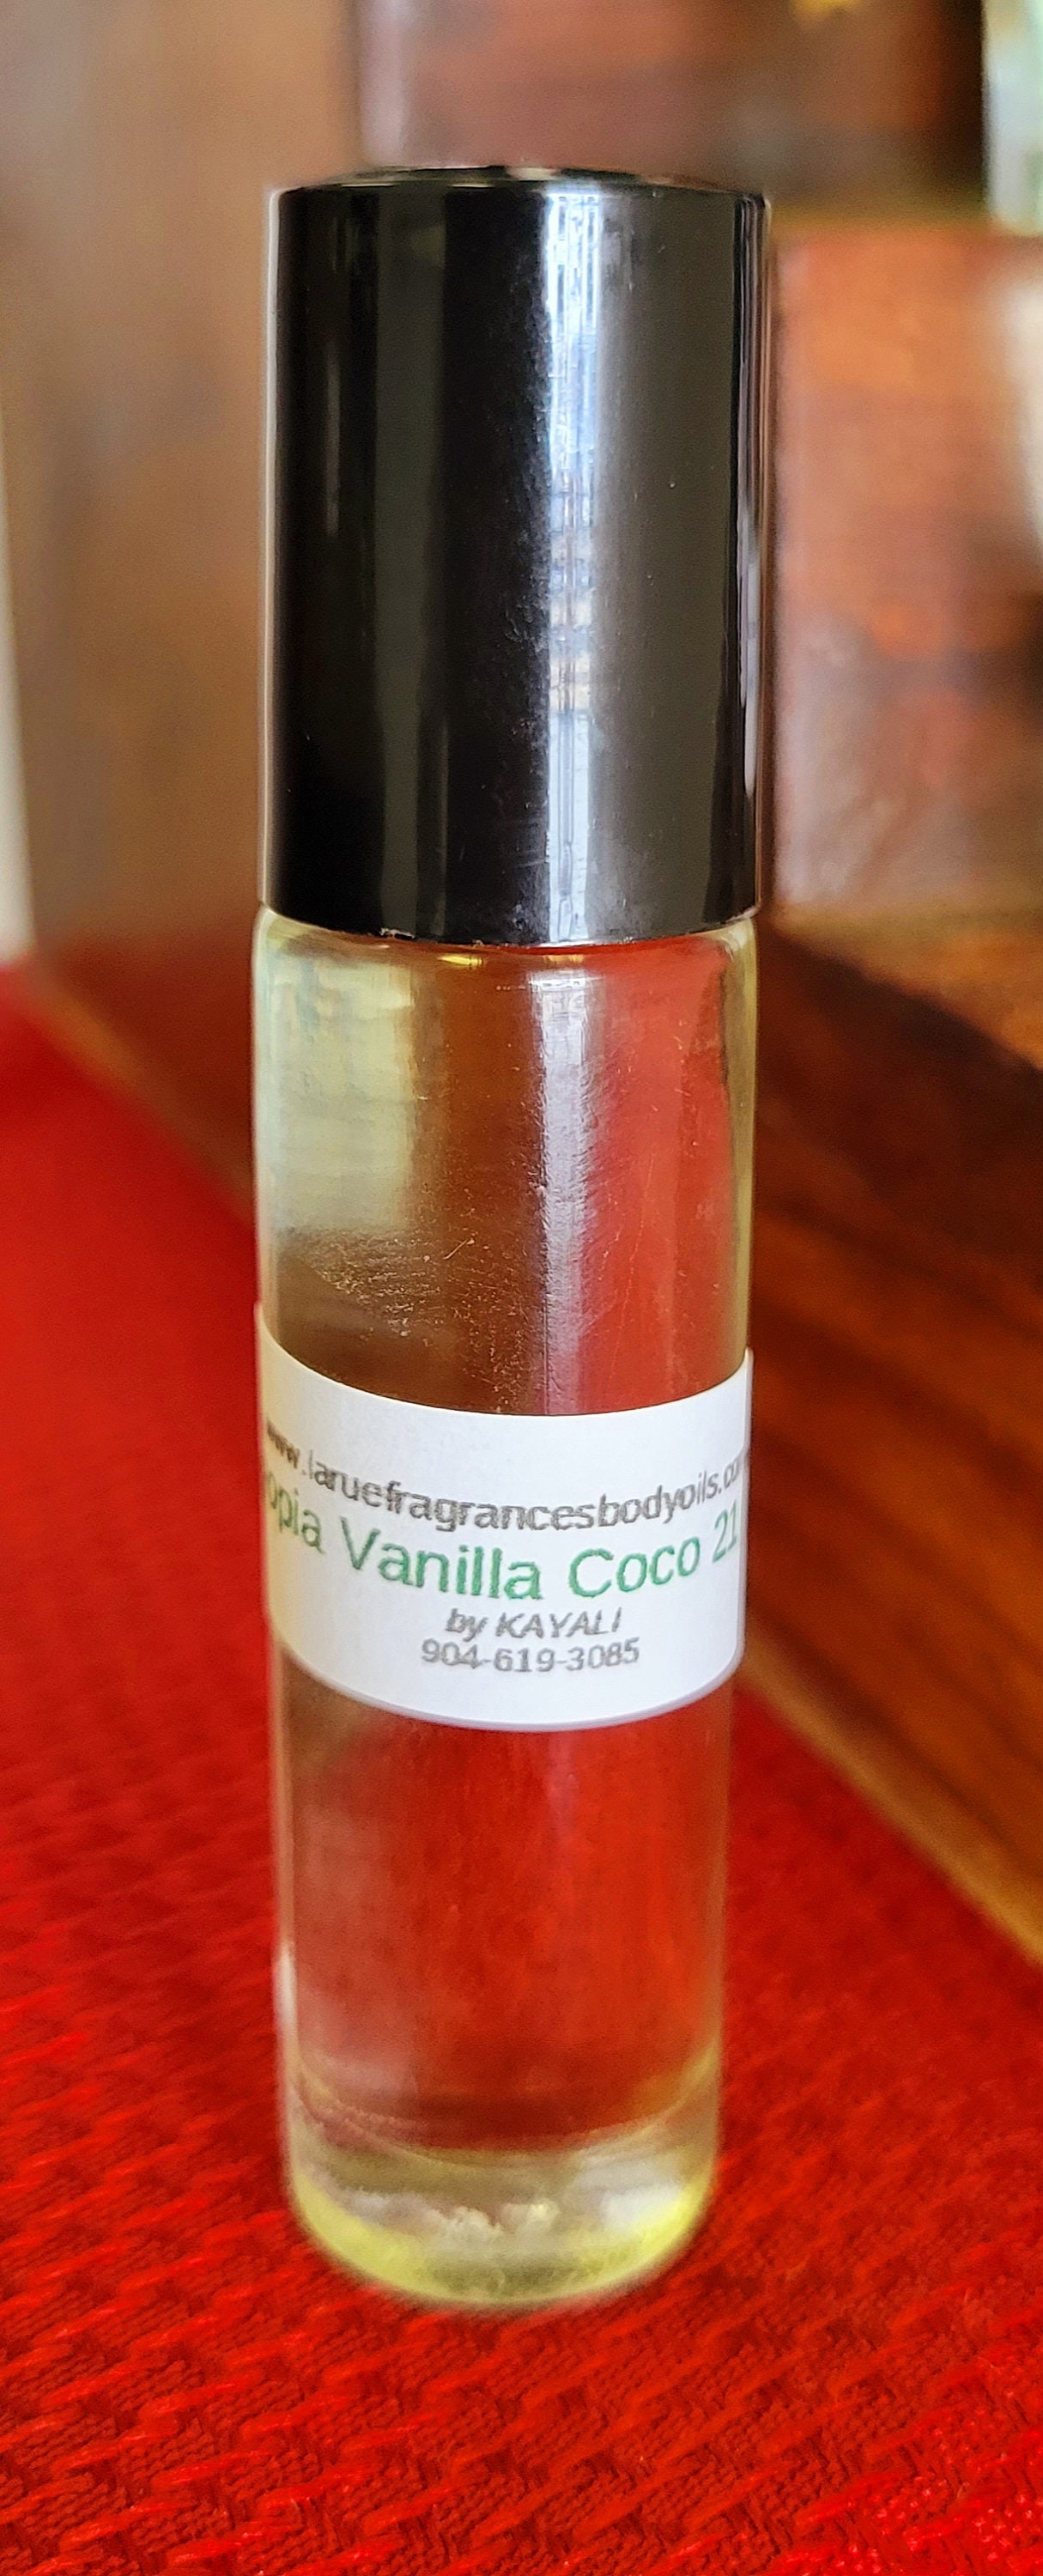 Compare Aroma to Utopia Vanilla Coco 21 by Kayali Women Men 